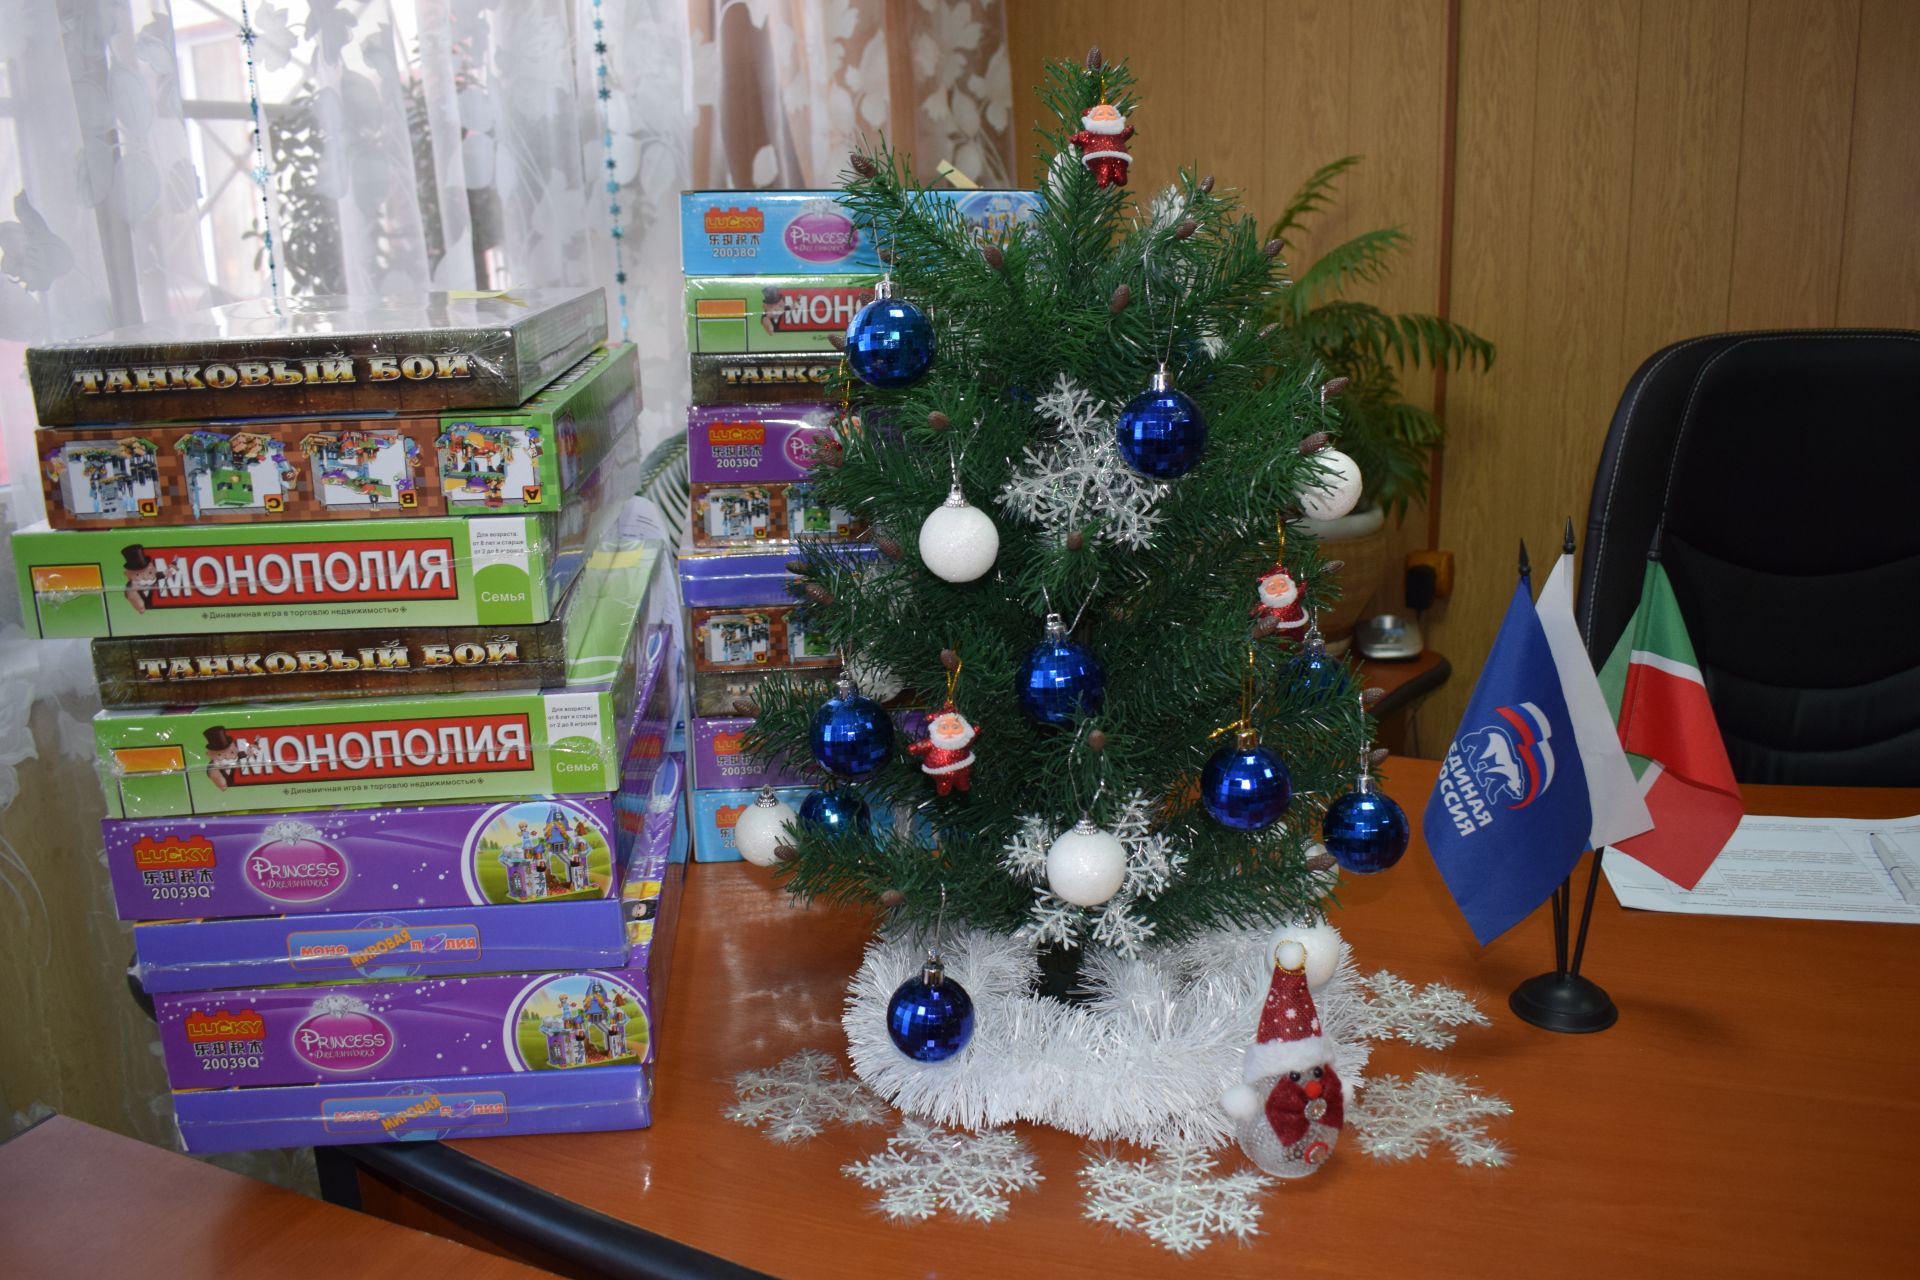 Депутат Госсовета и глава района порадовали азнакаевскую детвору подарками от Деда Мороза